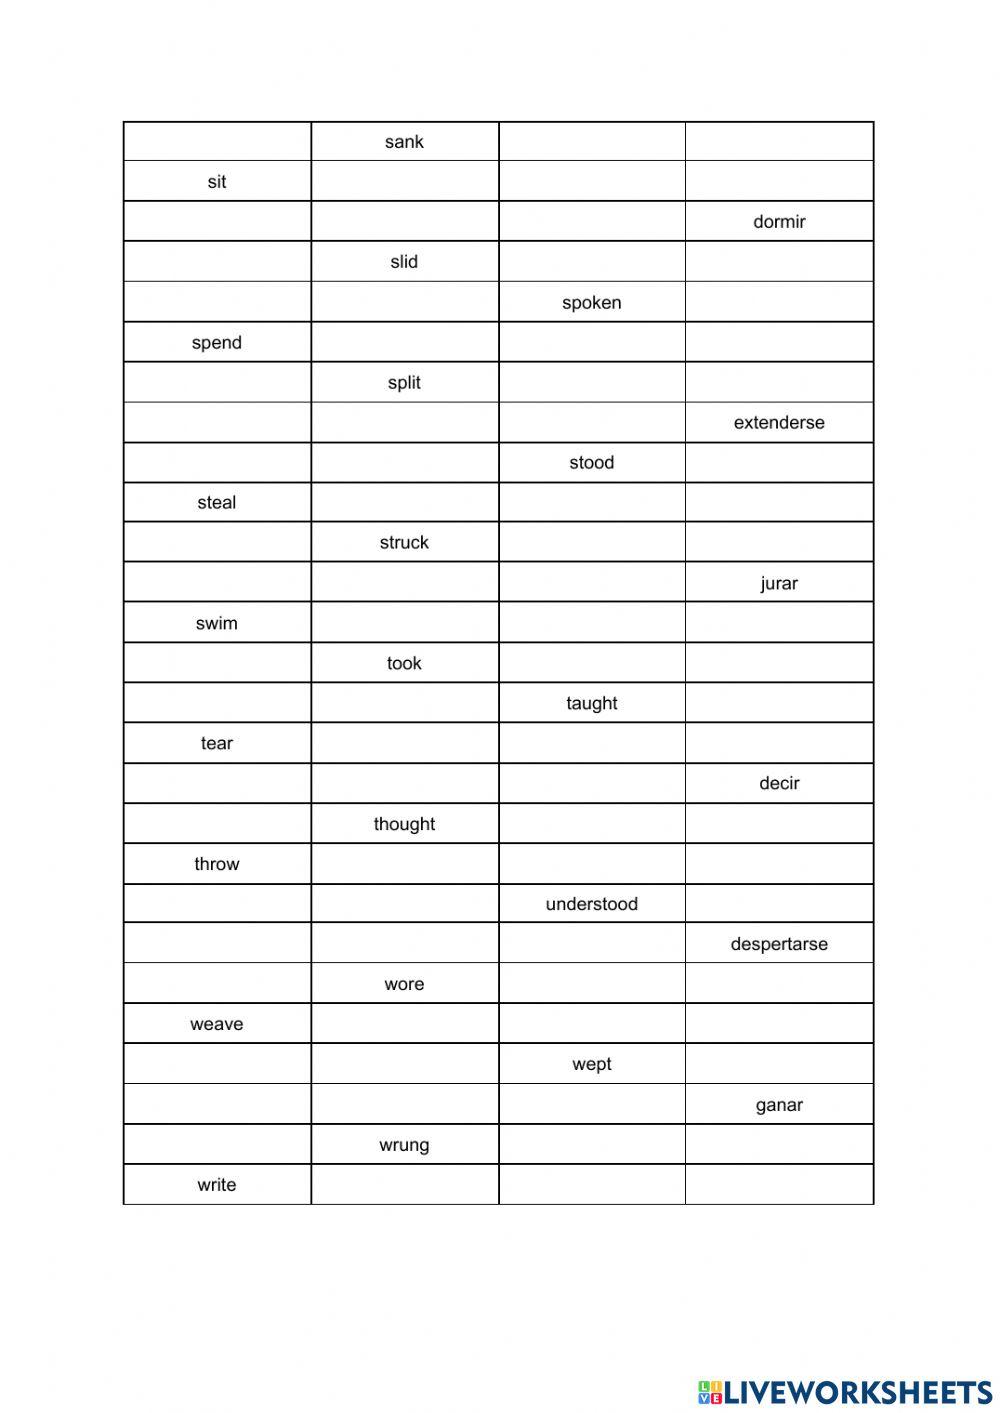 Irregular verbs online exercise for 6º primaria | Live Worksheets